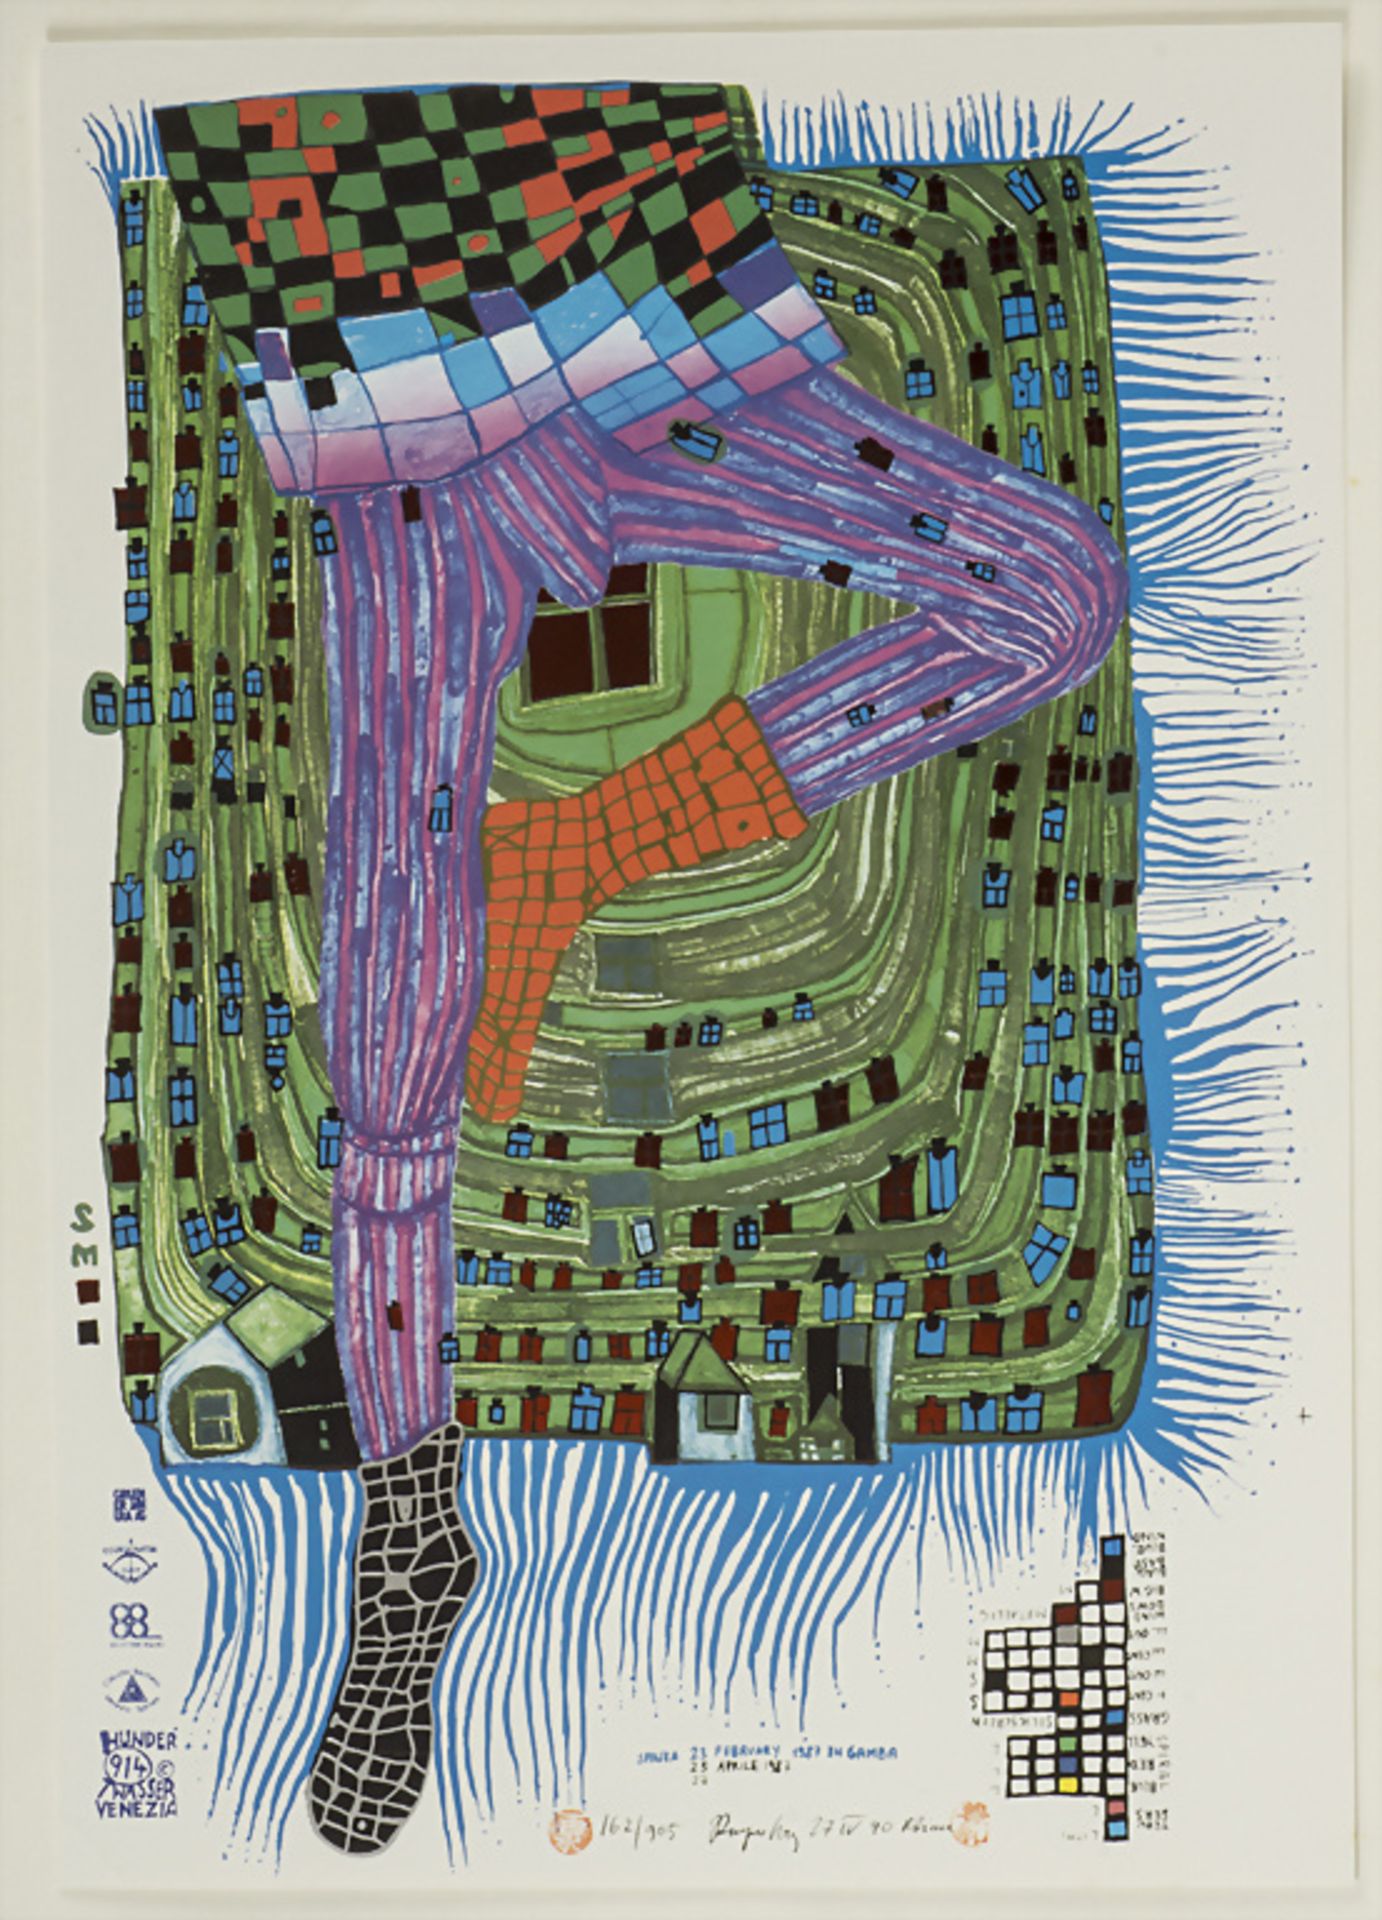 nach Friedensreich Hundertwasser (1928-2000), 'In gamba', 1987